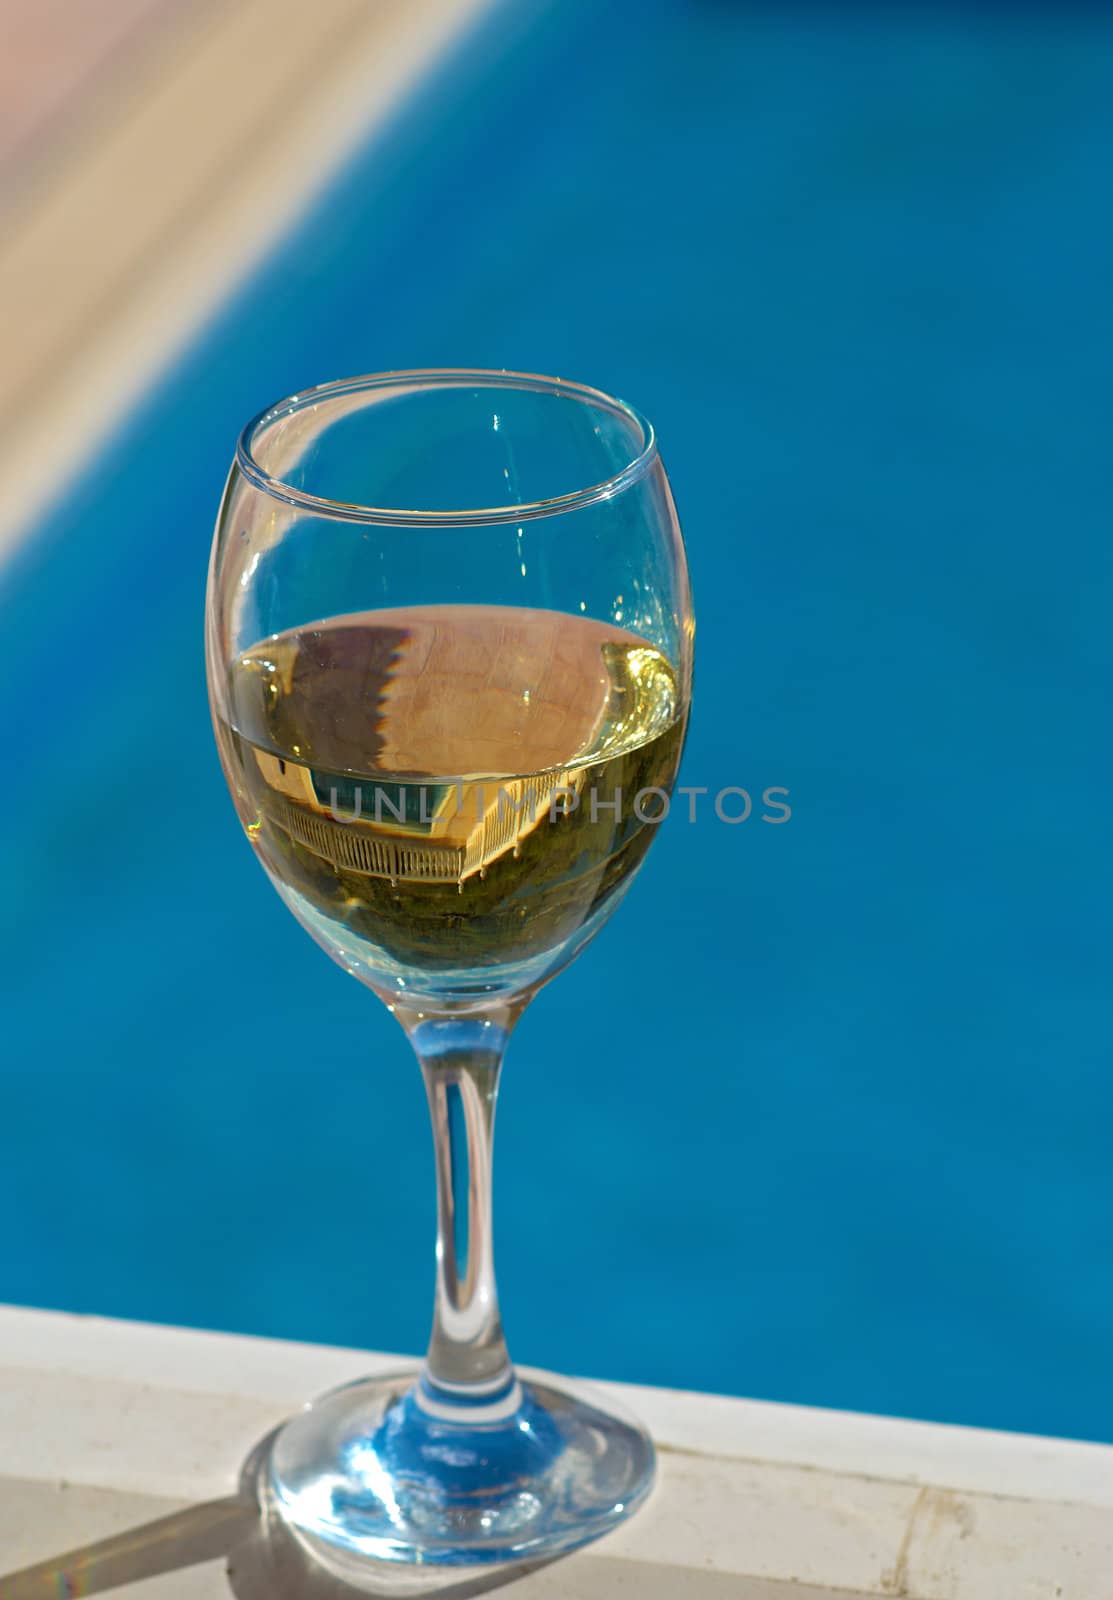 Wine poolside by hemeroskopion